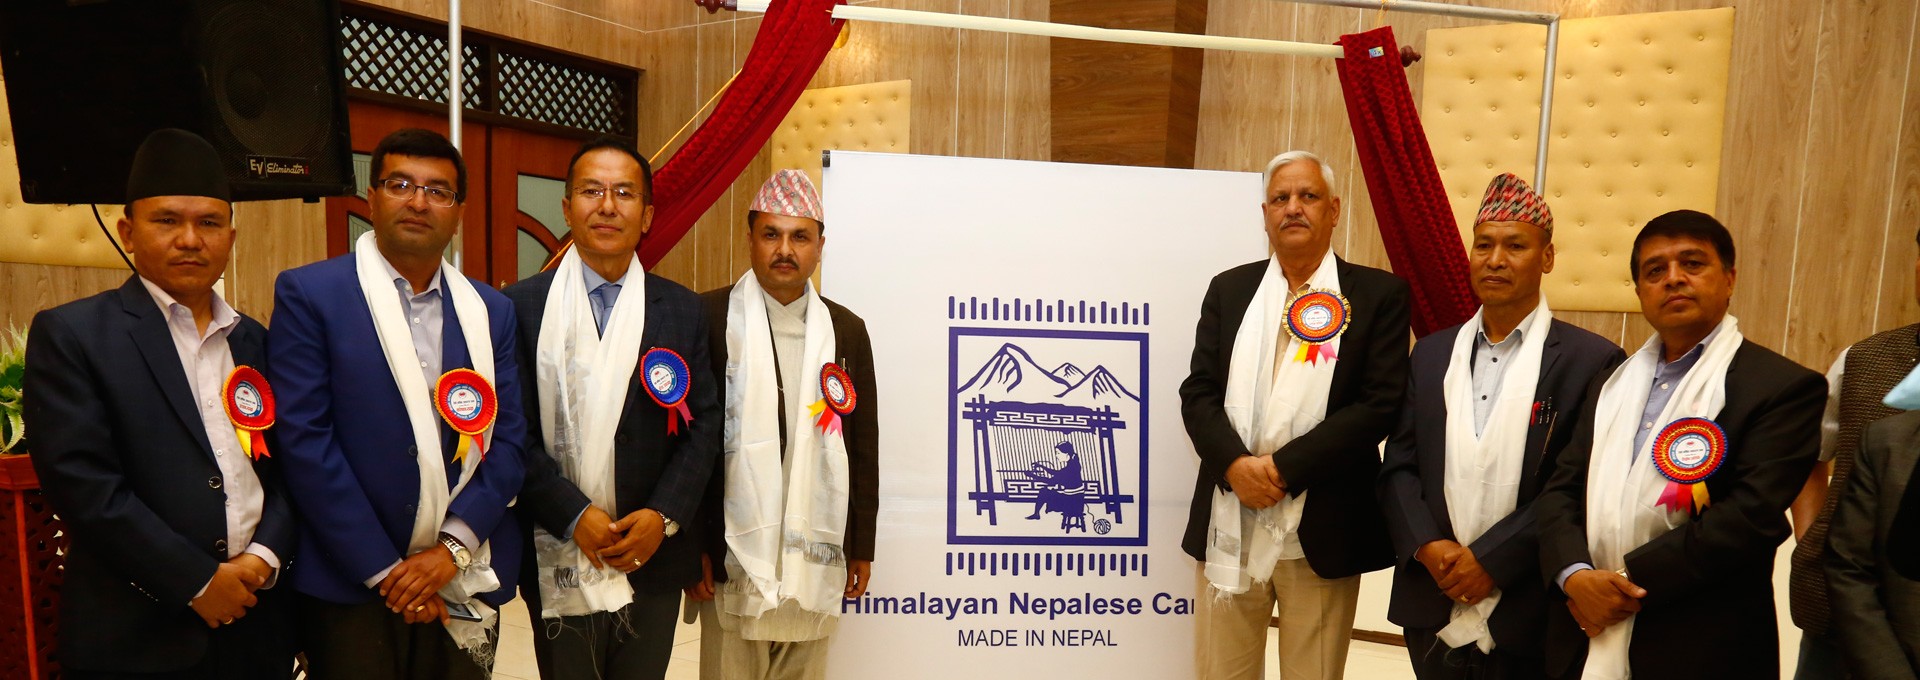 General Meeting of Himalayan Nepalese Carpet